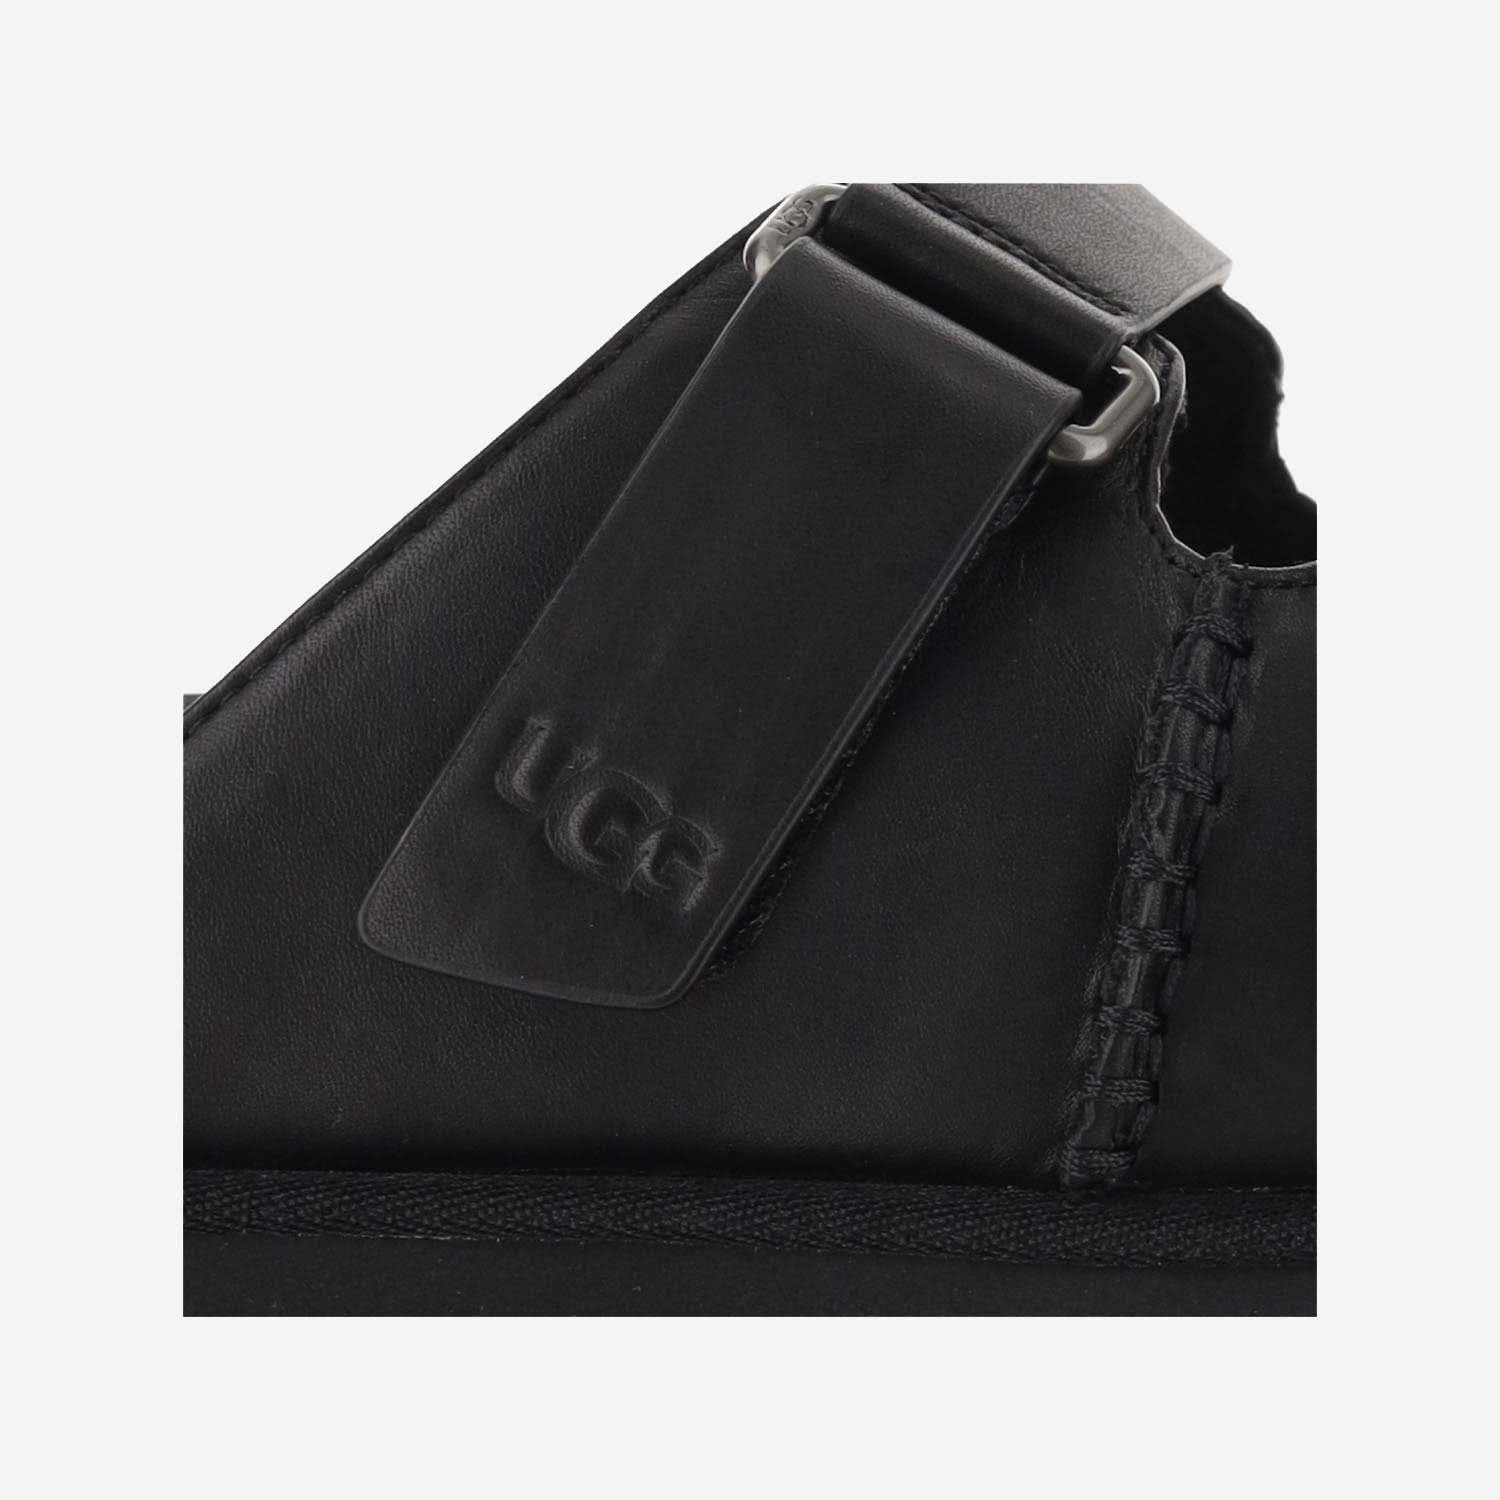 Shop Ugg Goldenstar Hi Leather Sandals In Black